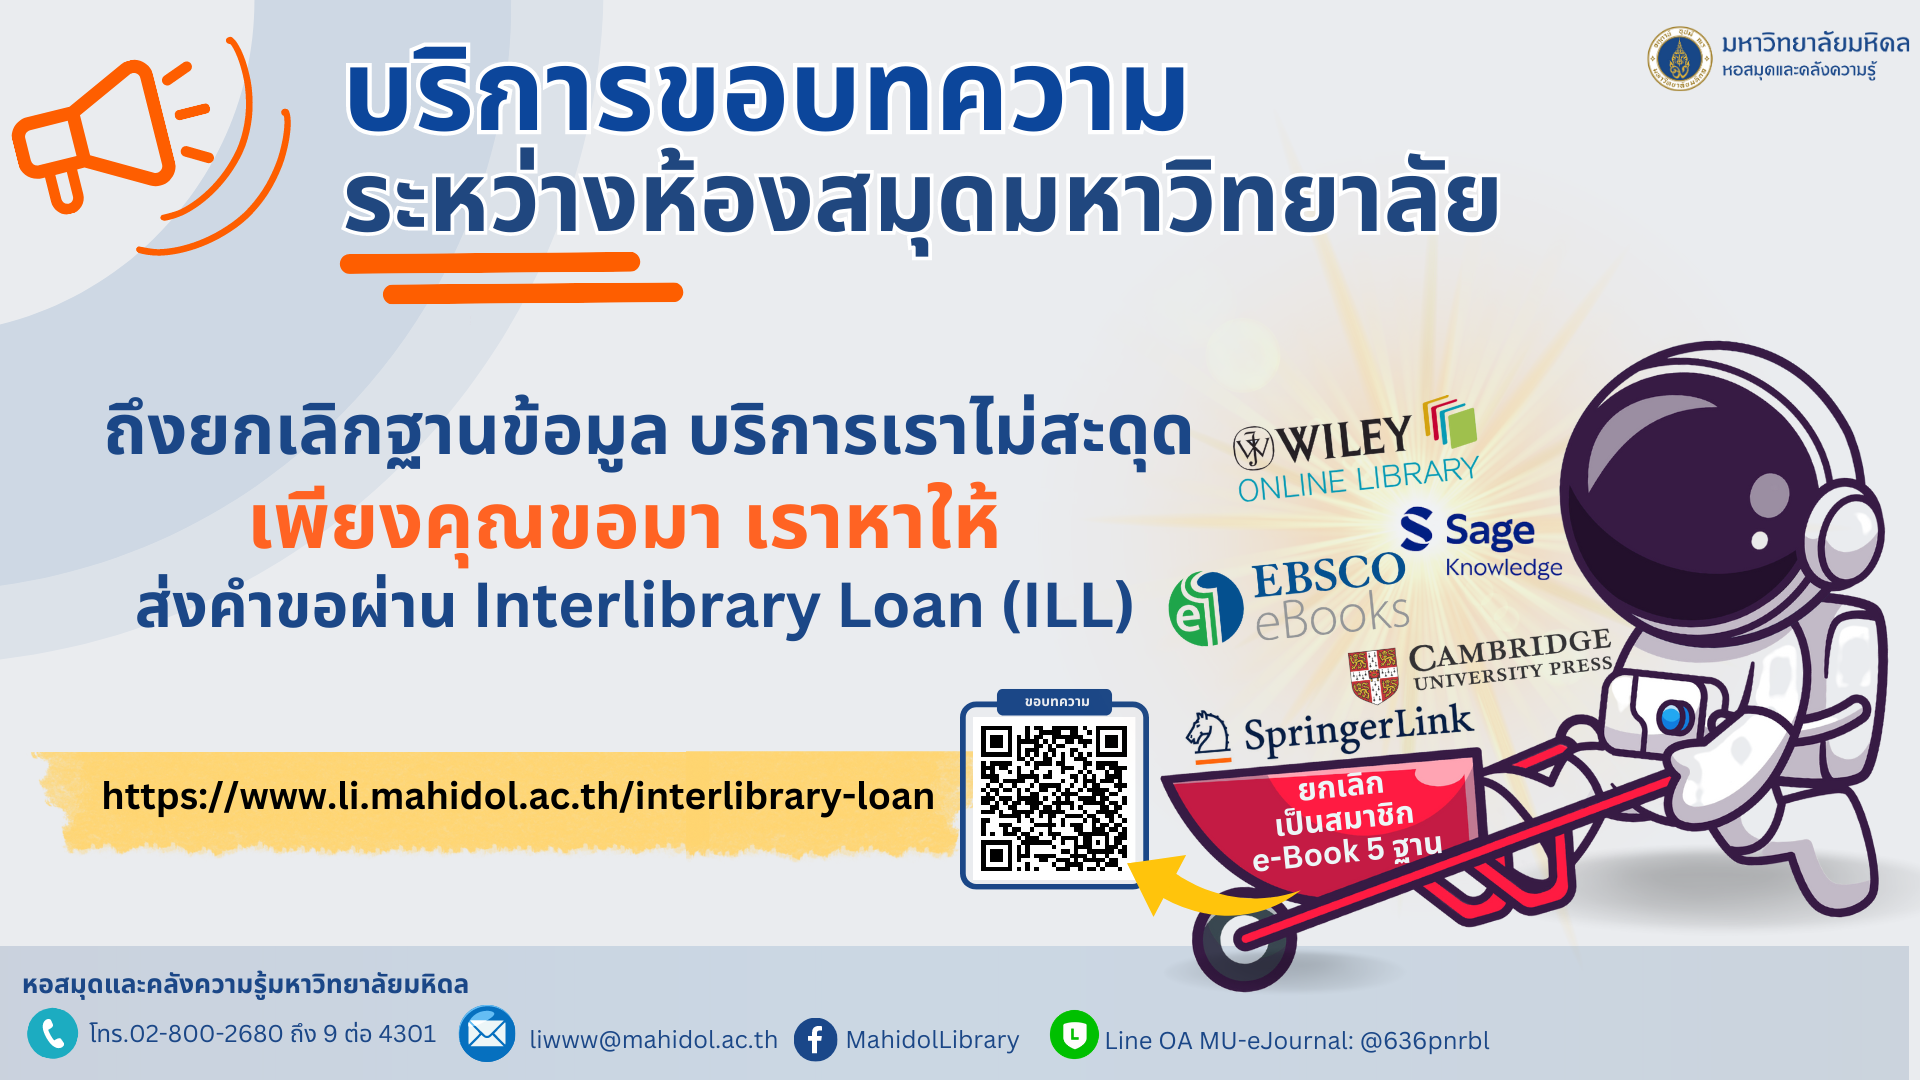 เปิดให้บริการขอบทความระหว่างมหาวิทยาลัย ผ่าน Interlibrary Loan (ILL)